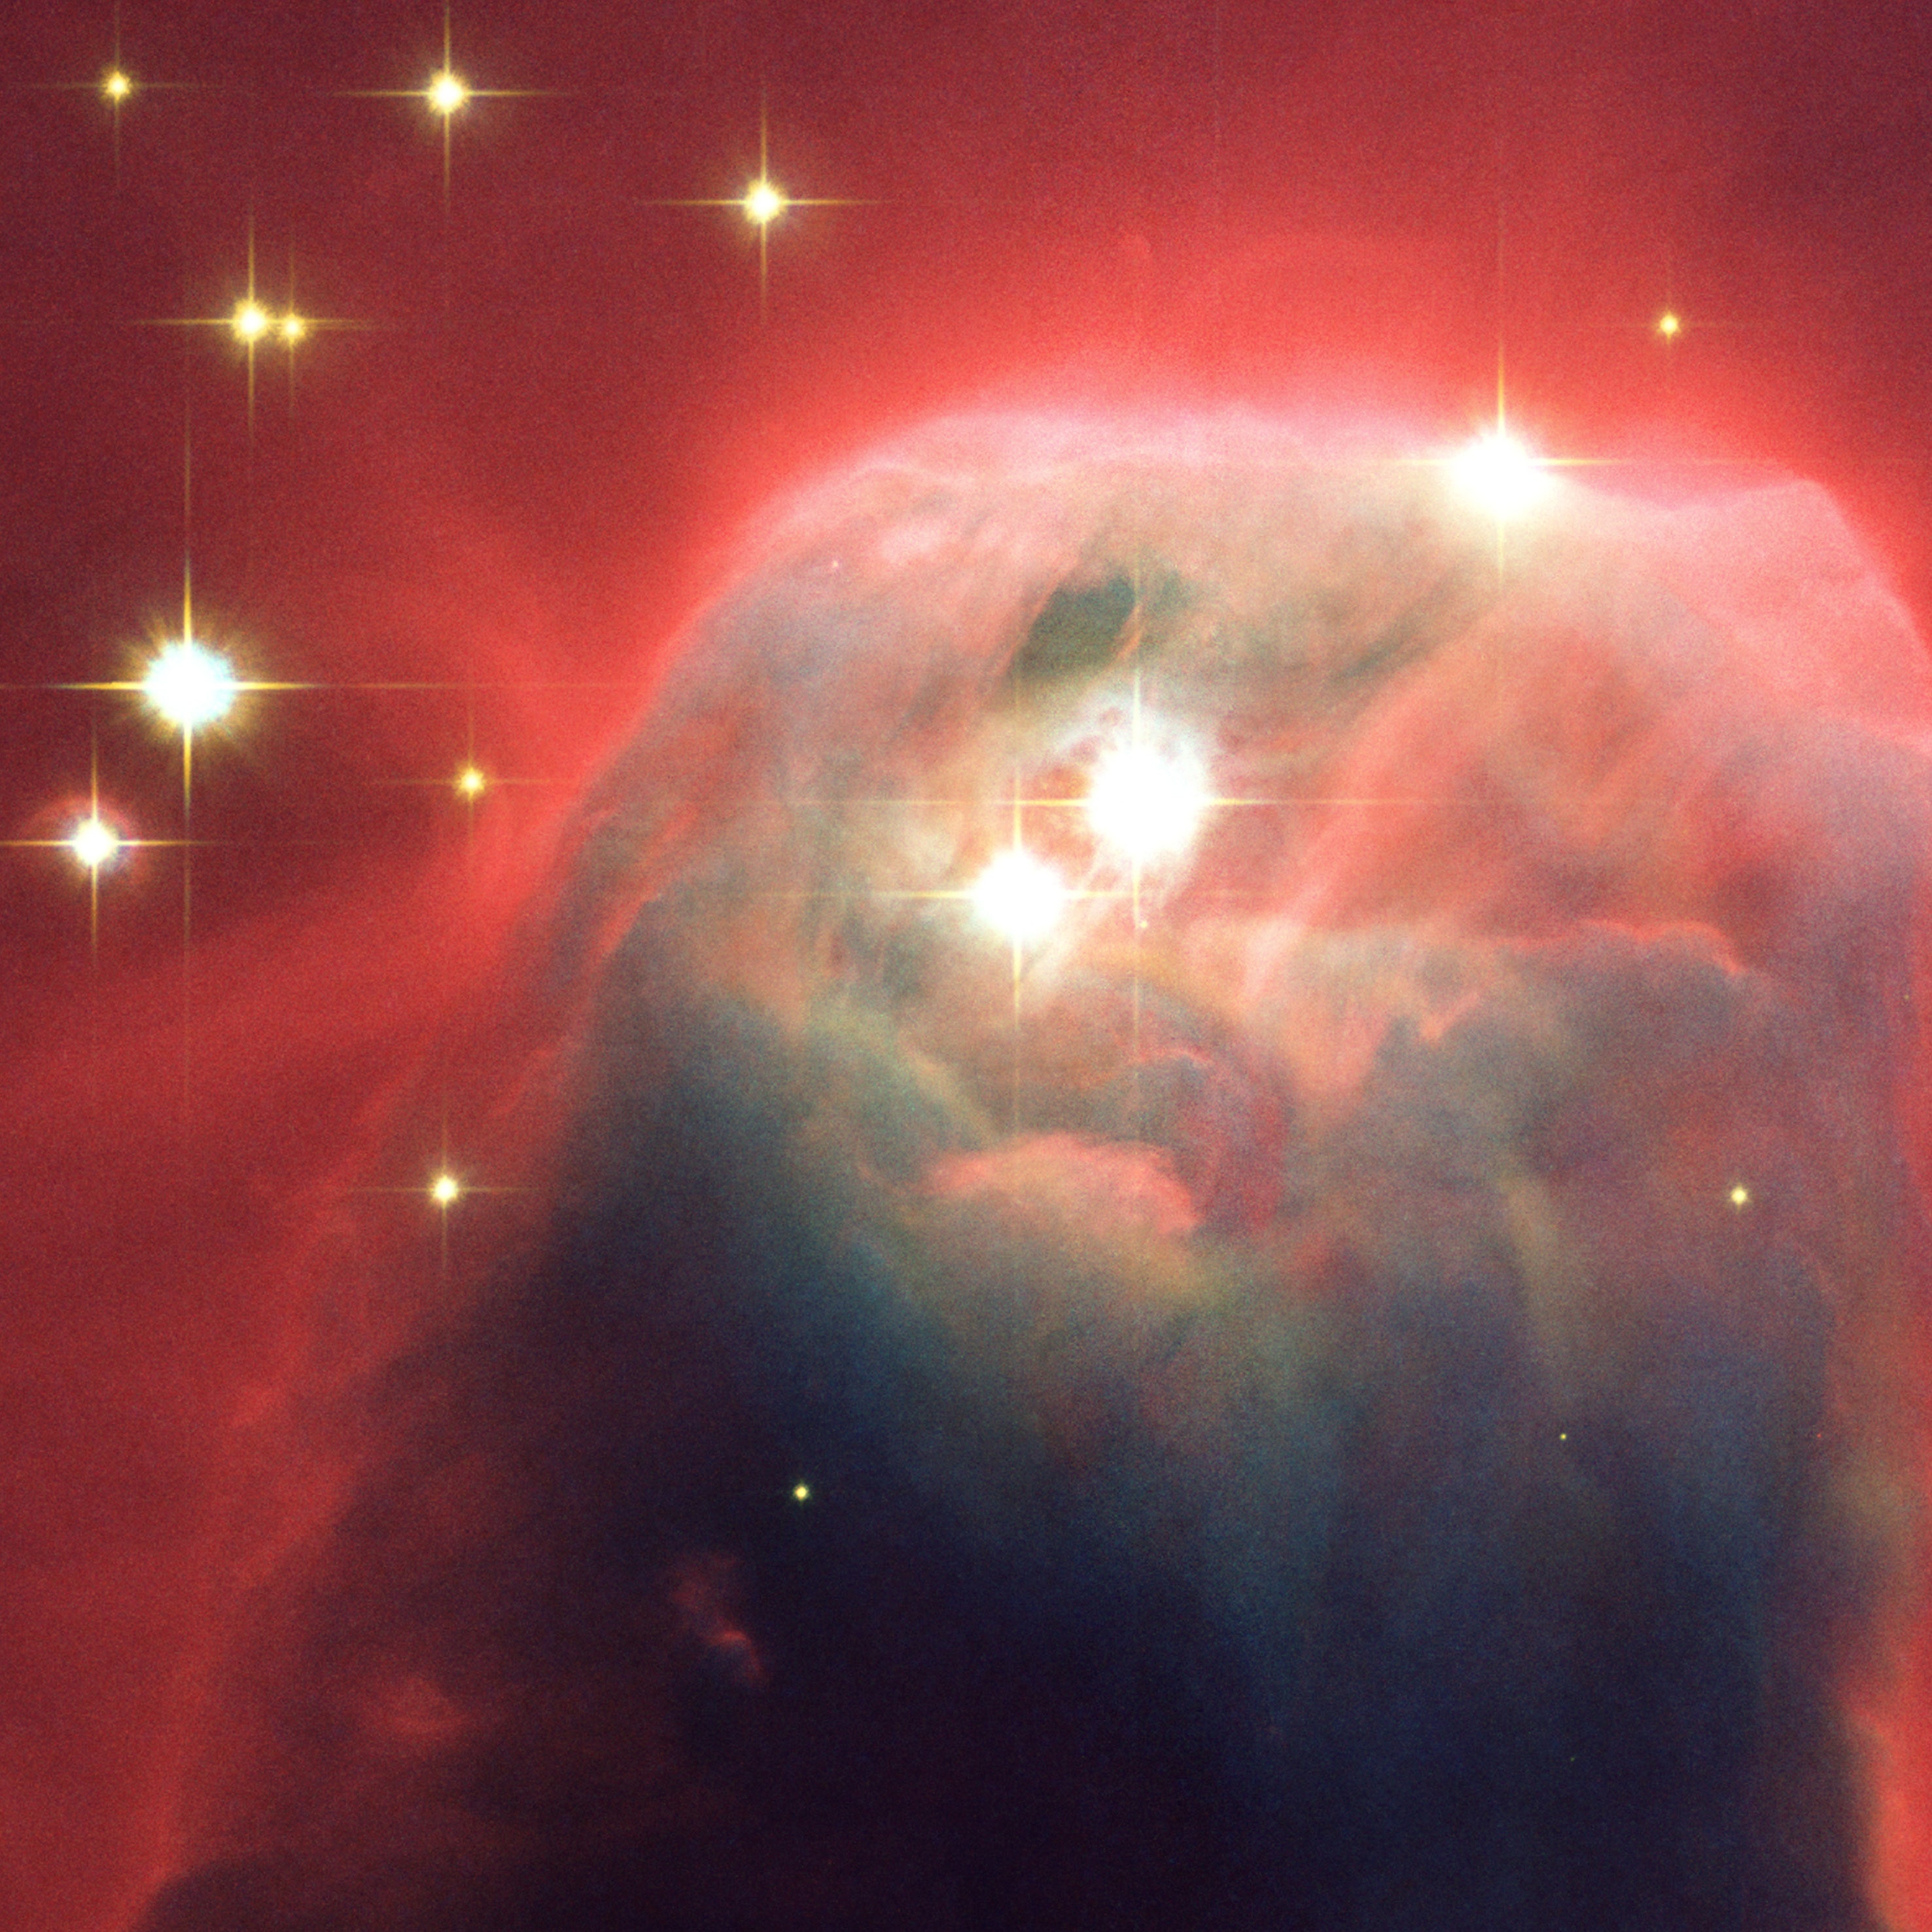 Mgławica Stożek - NGC 2264